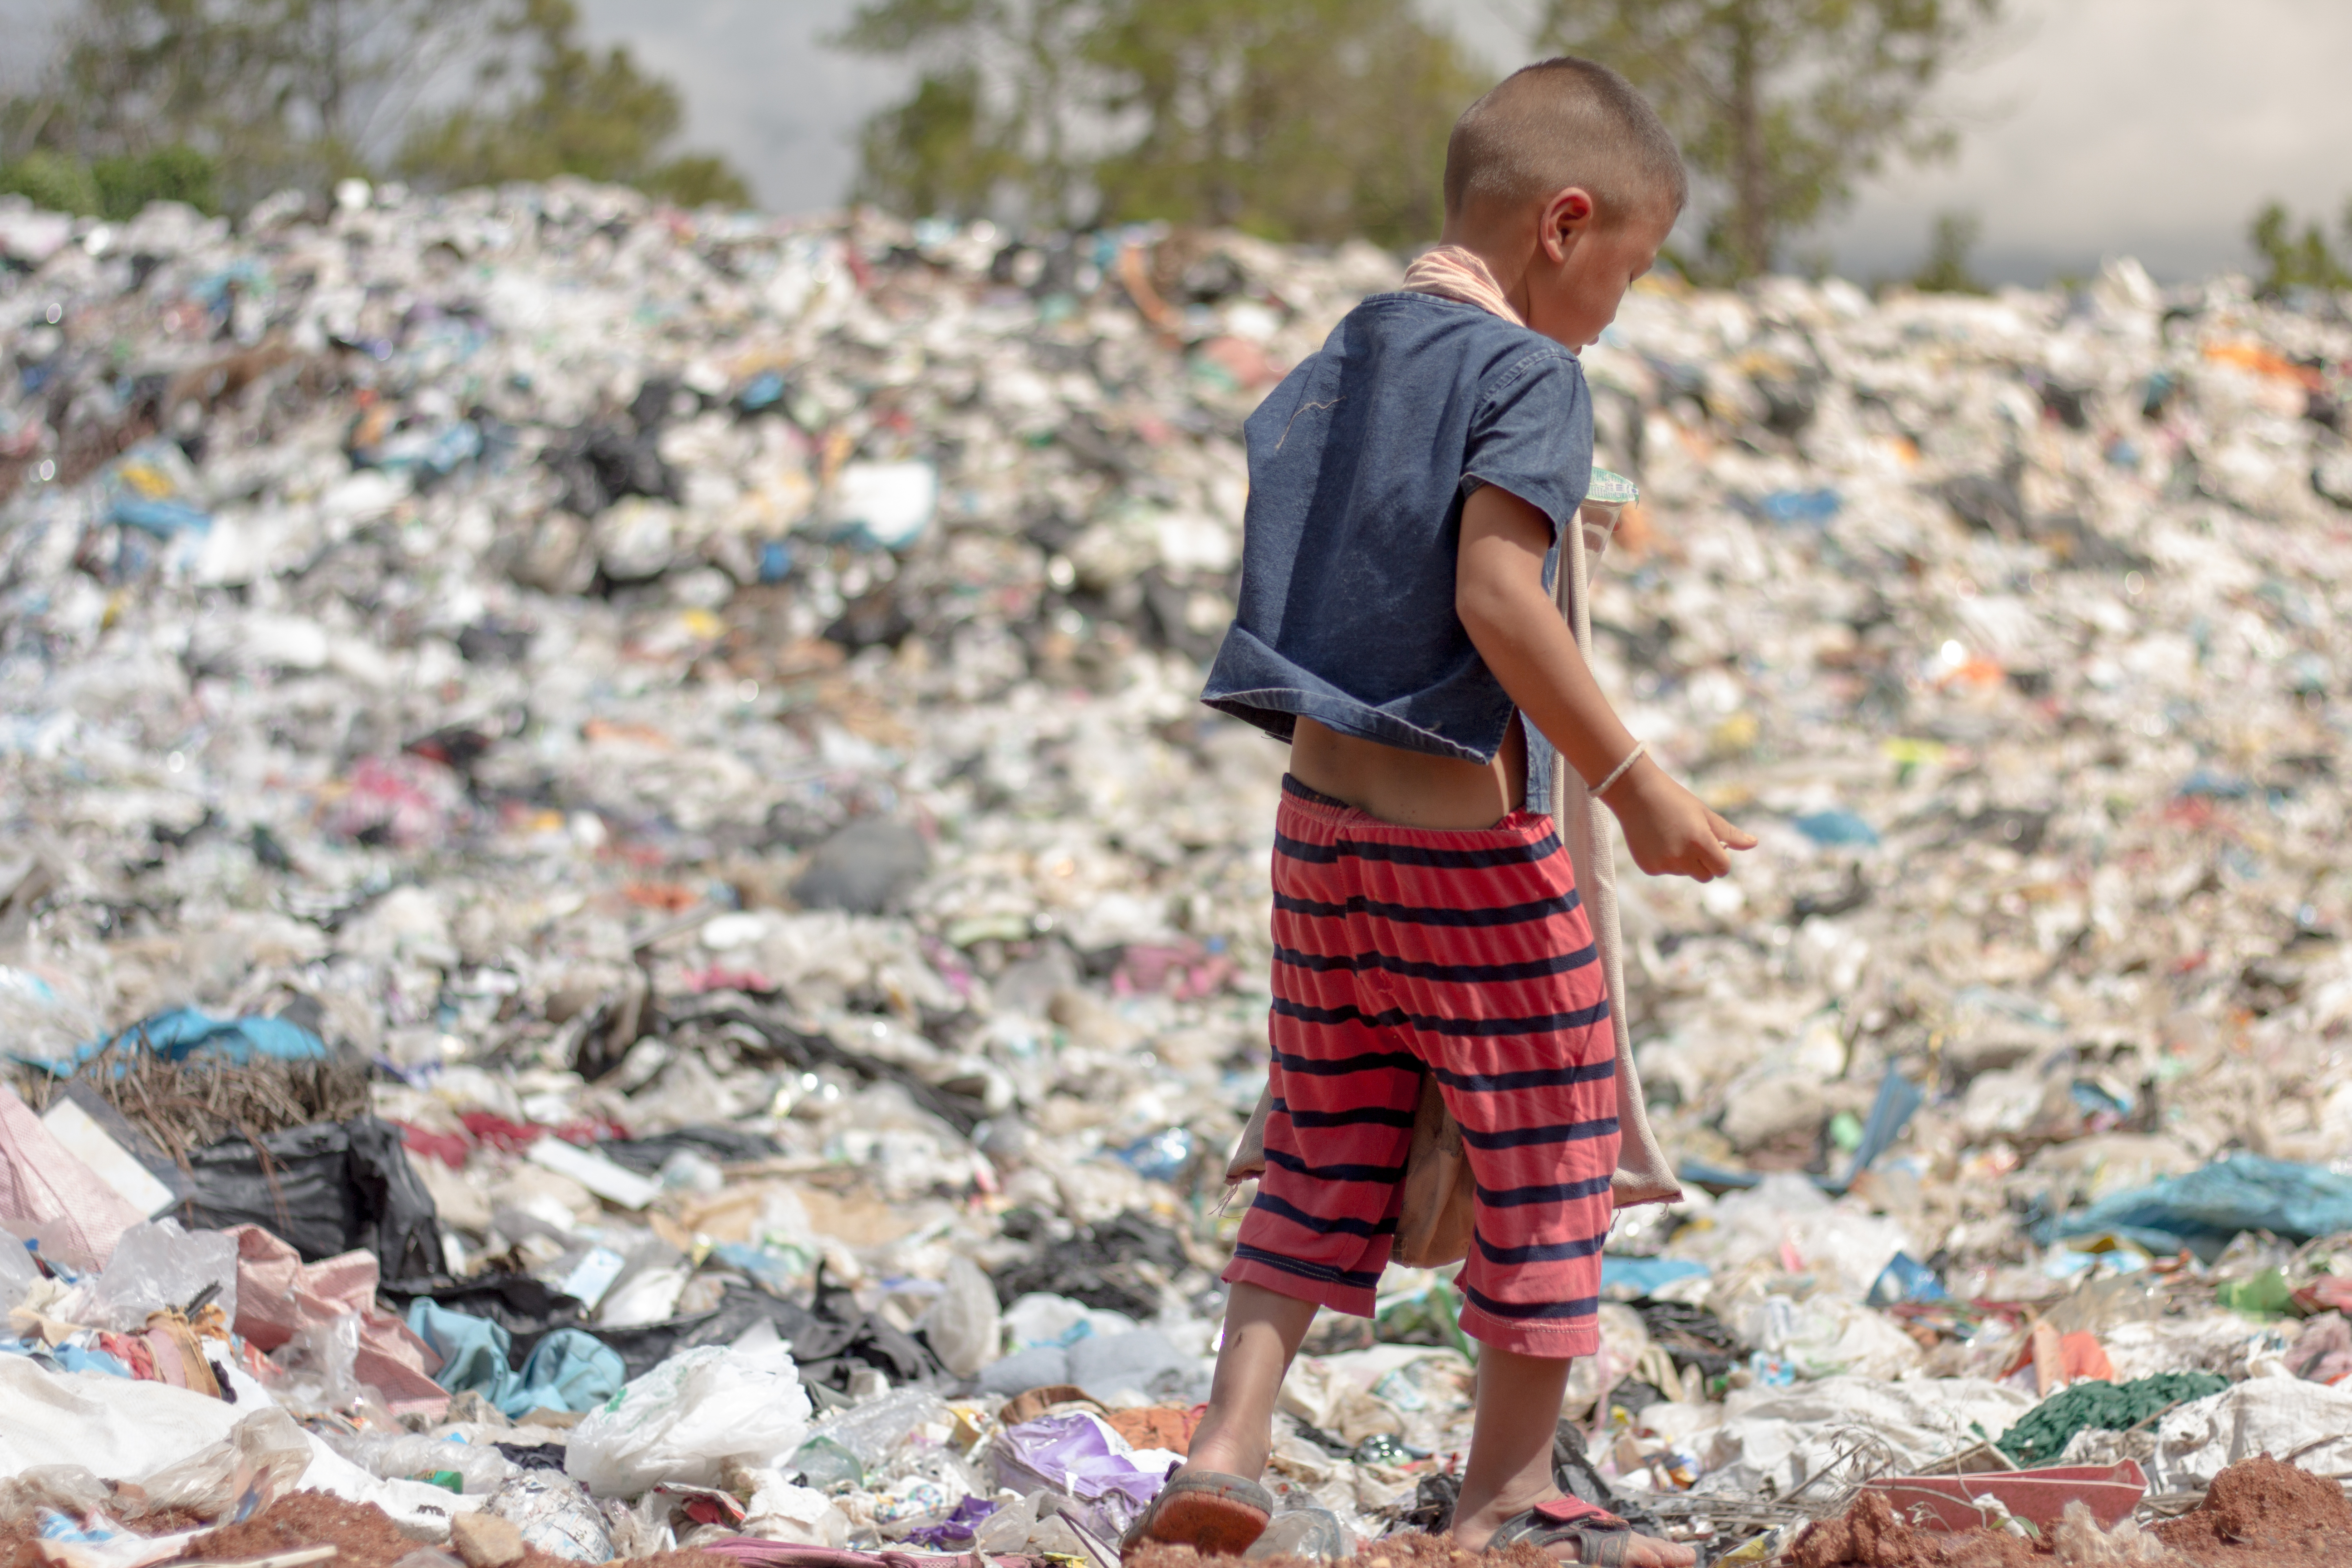 Child walking through landfill